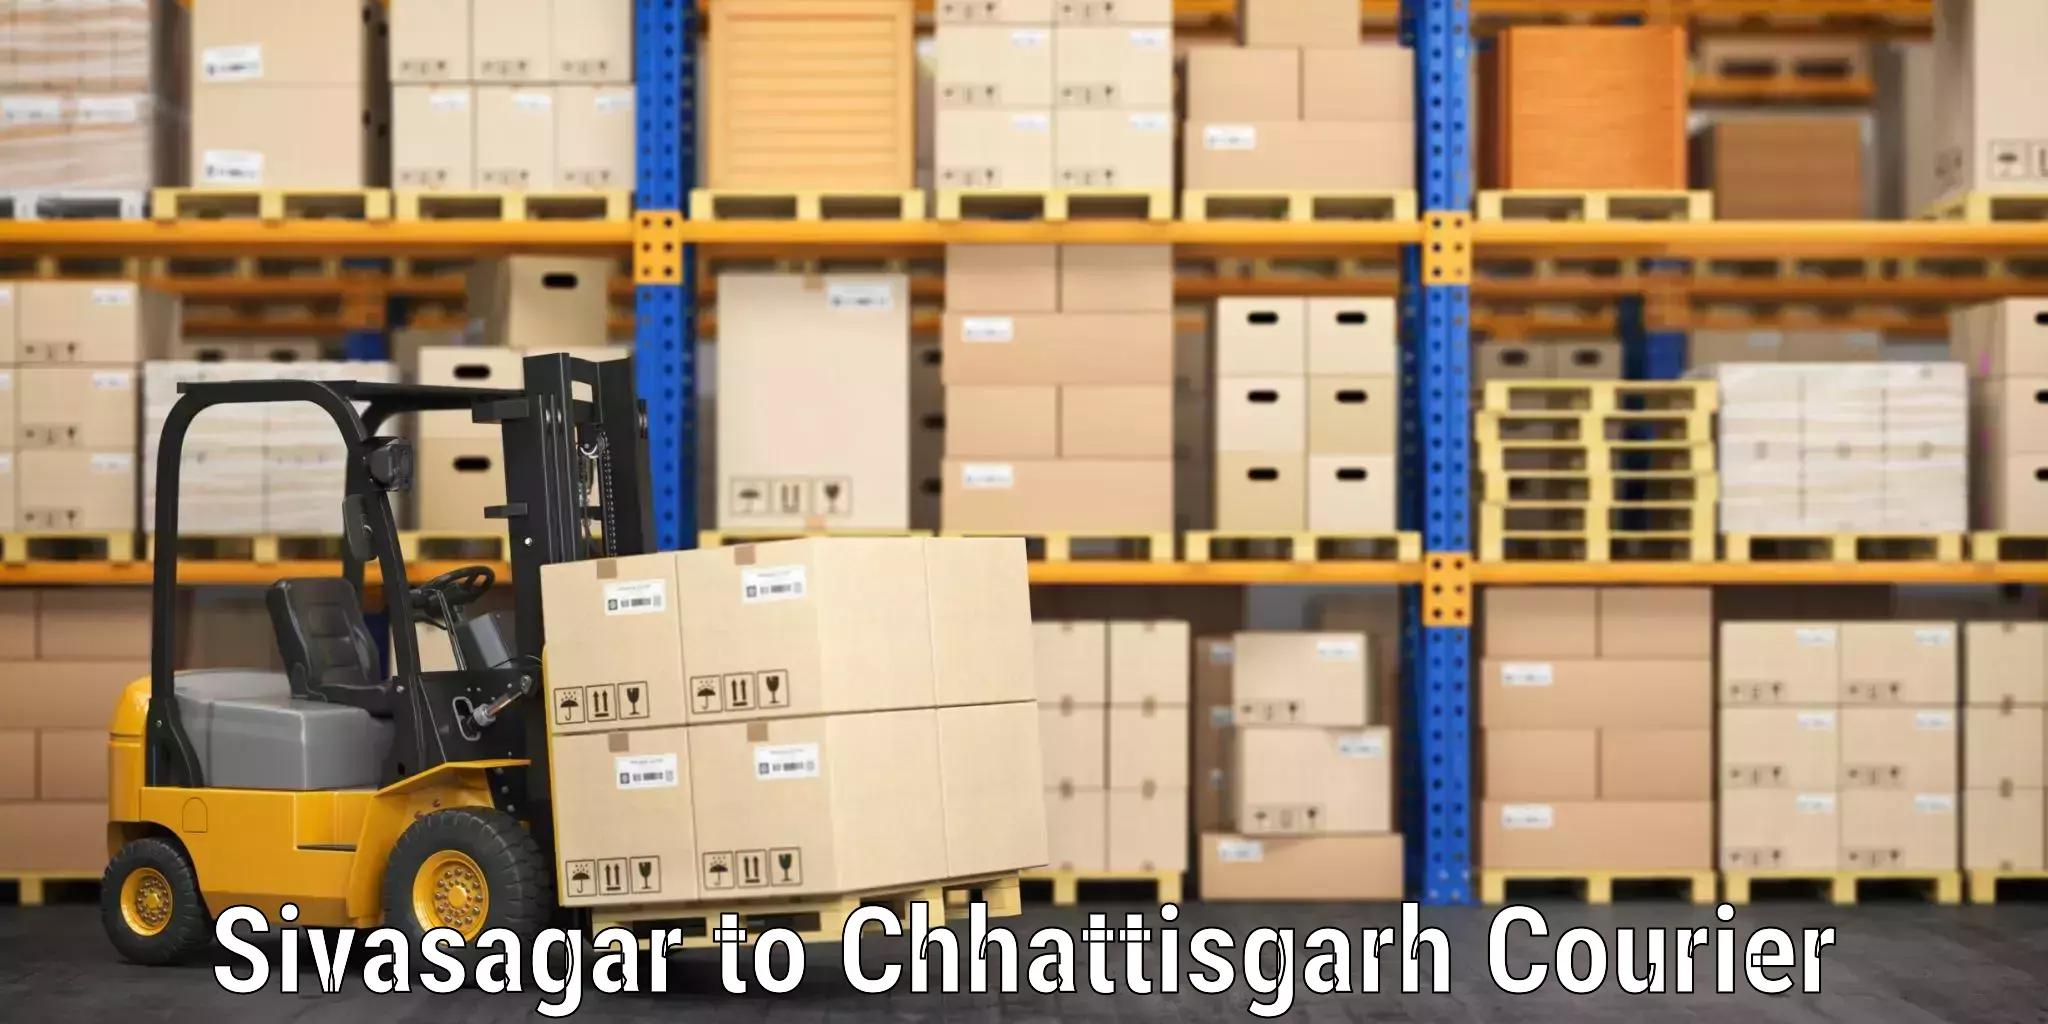 Luggage shipment specialists Sivasagar to Kawardha